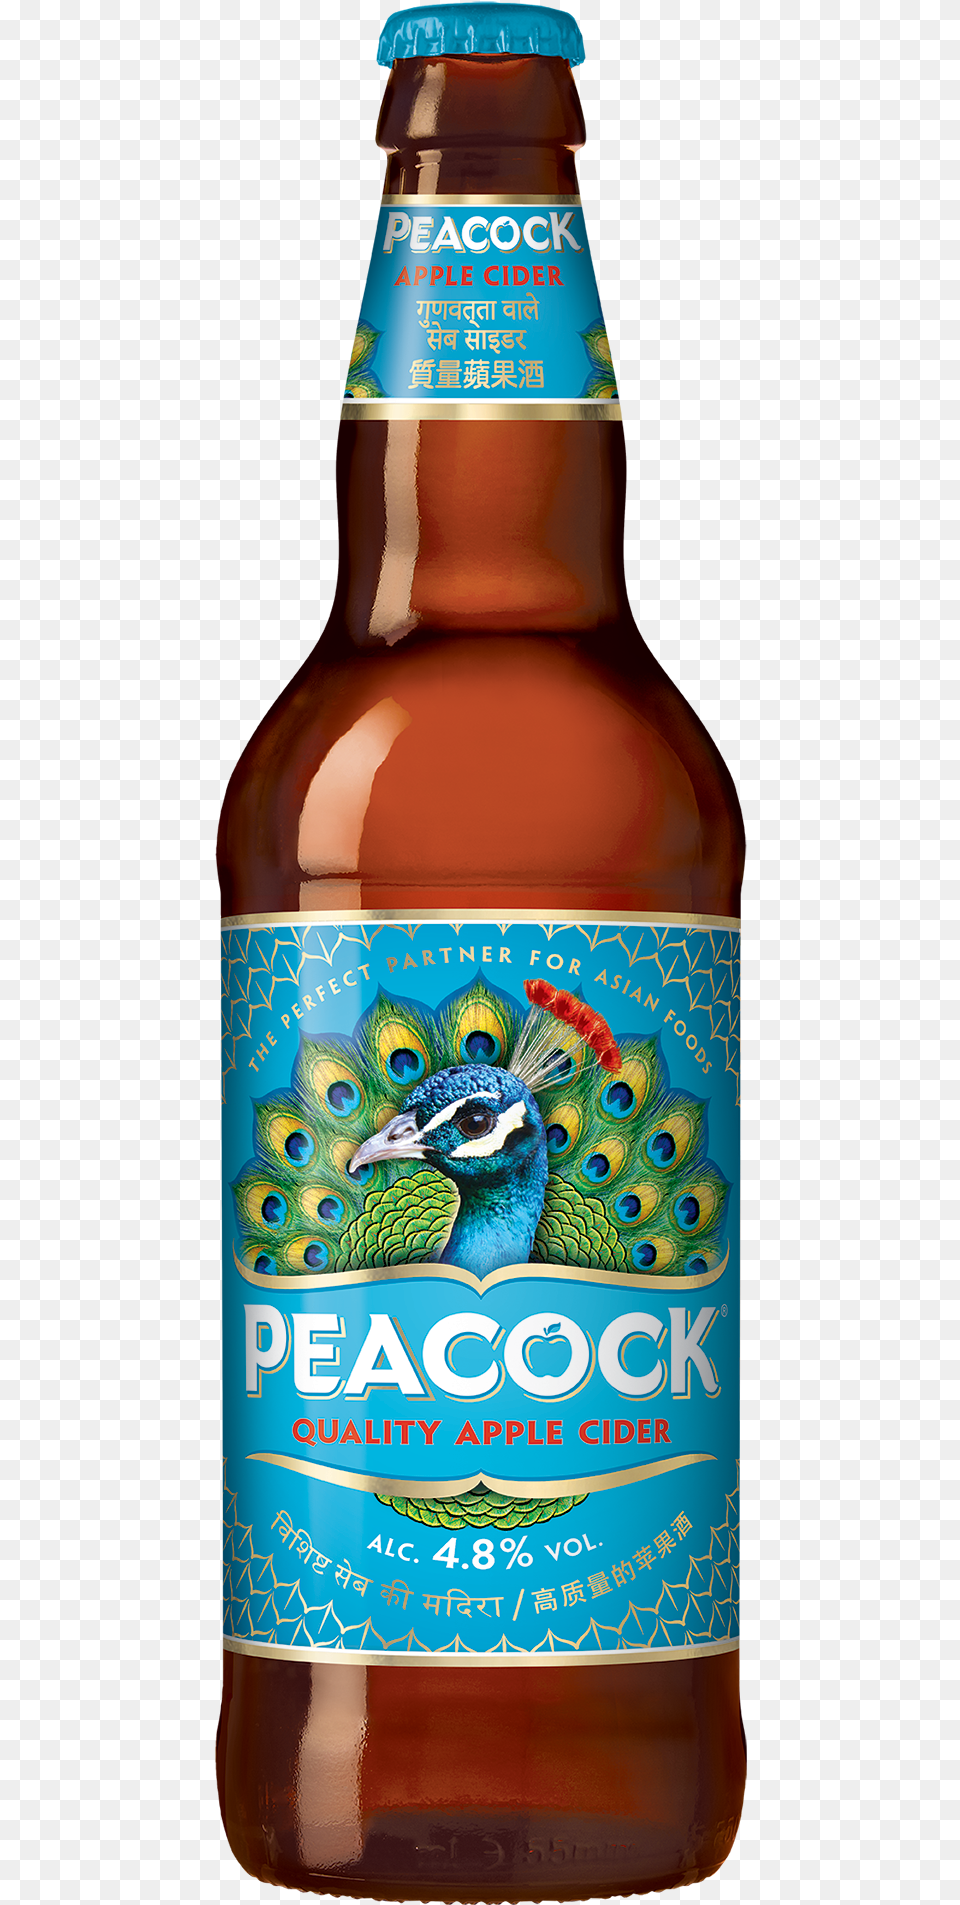 Kingfisher Beer Bottle Peacock Apple Cider, Alcohol, Beer Bottle, Beverage, Liquor Free Png